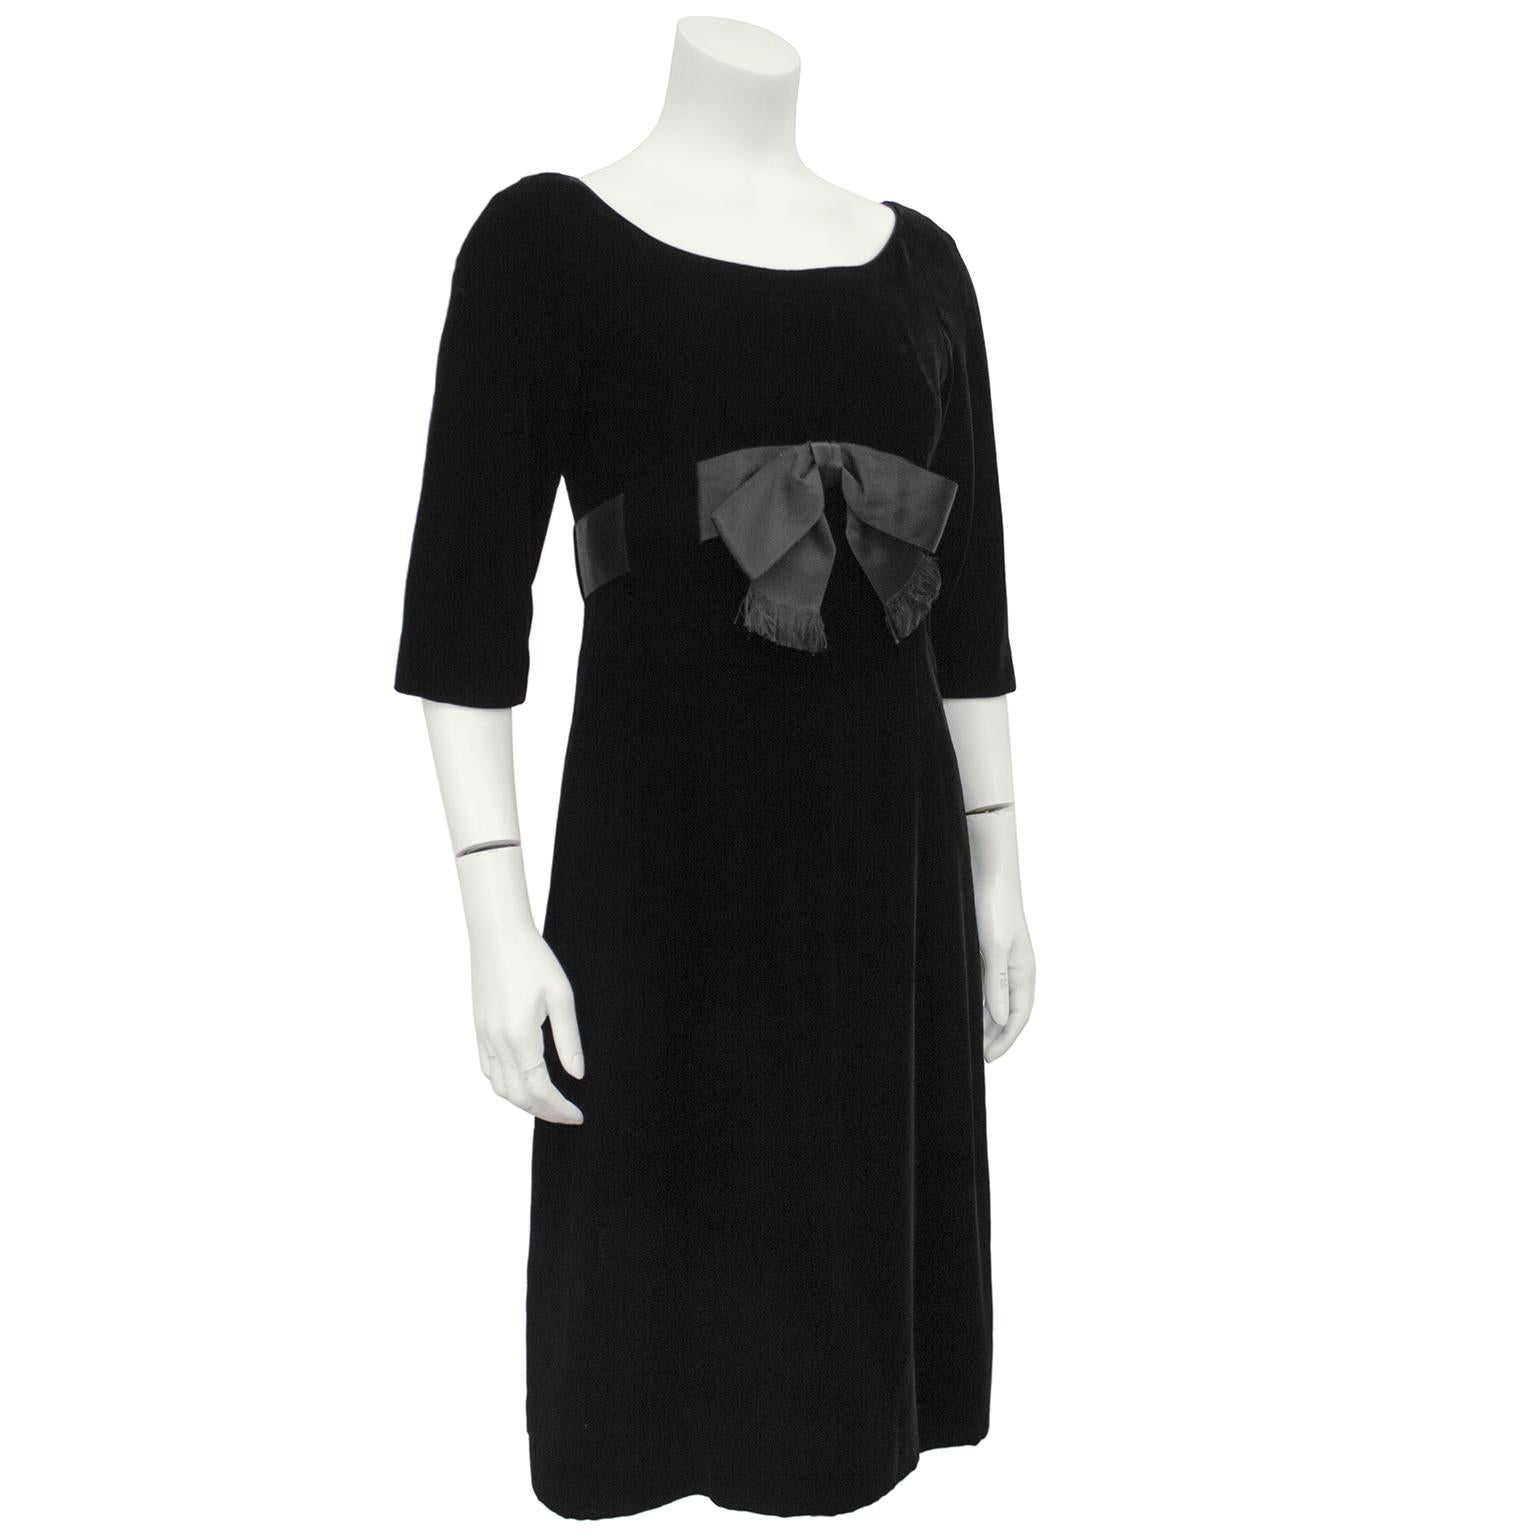 Schwarzes Samtkleid mit Empire-Taille aus den frühen 1960er Jahren von Mollie Parnis, inspiriert von den Kleidern im Dior-Look der 60er Jahre. Rundhalsausschnitt, 3/4-Ärmel, breite Schärpe aus schwarzem Satin mit einer Schleife an der Vorderseite,